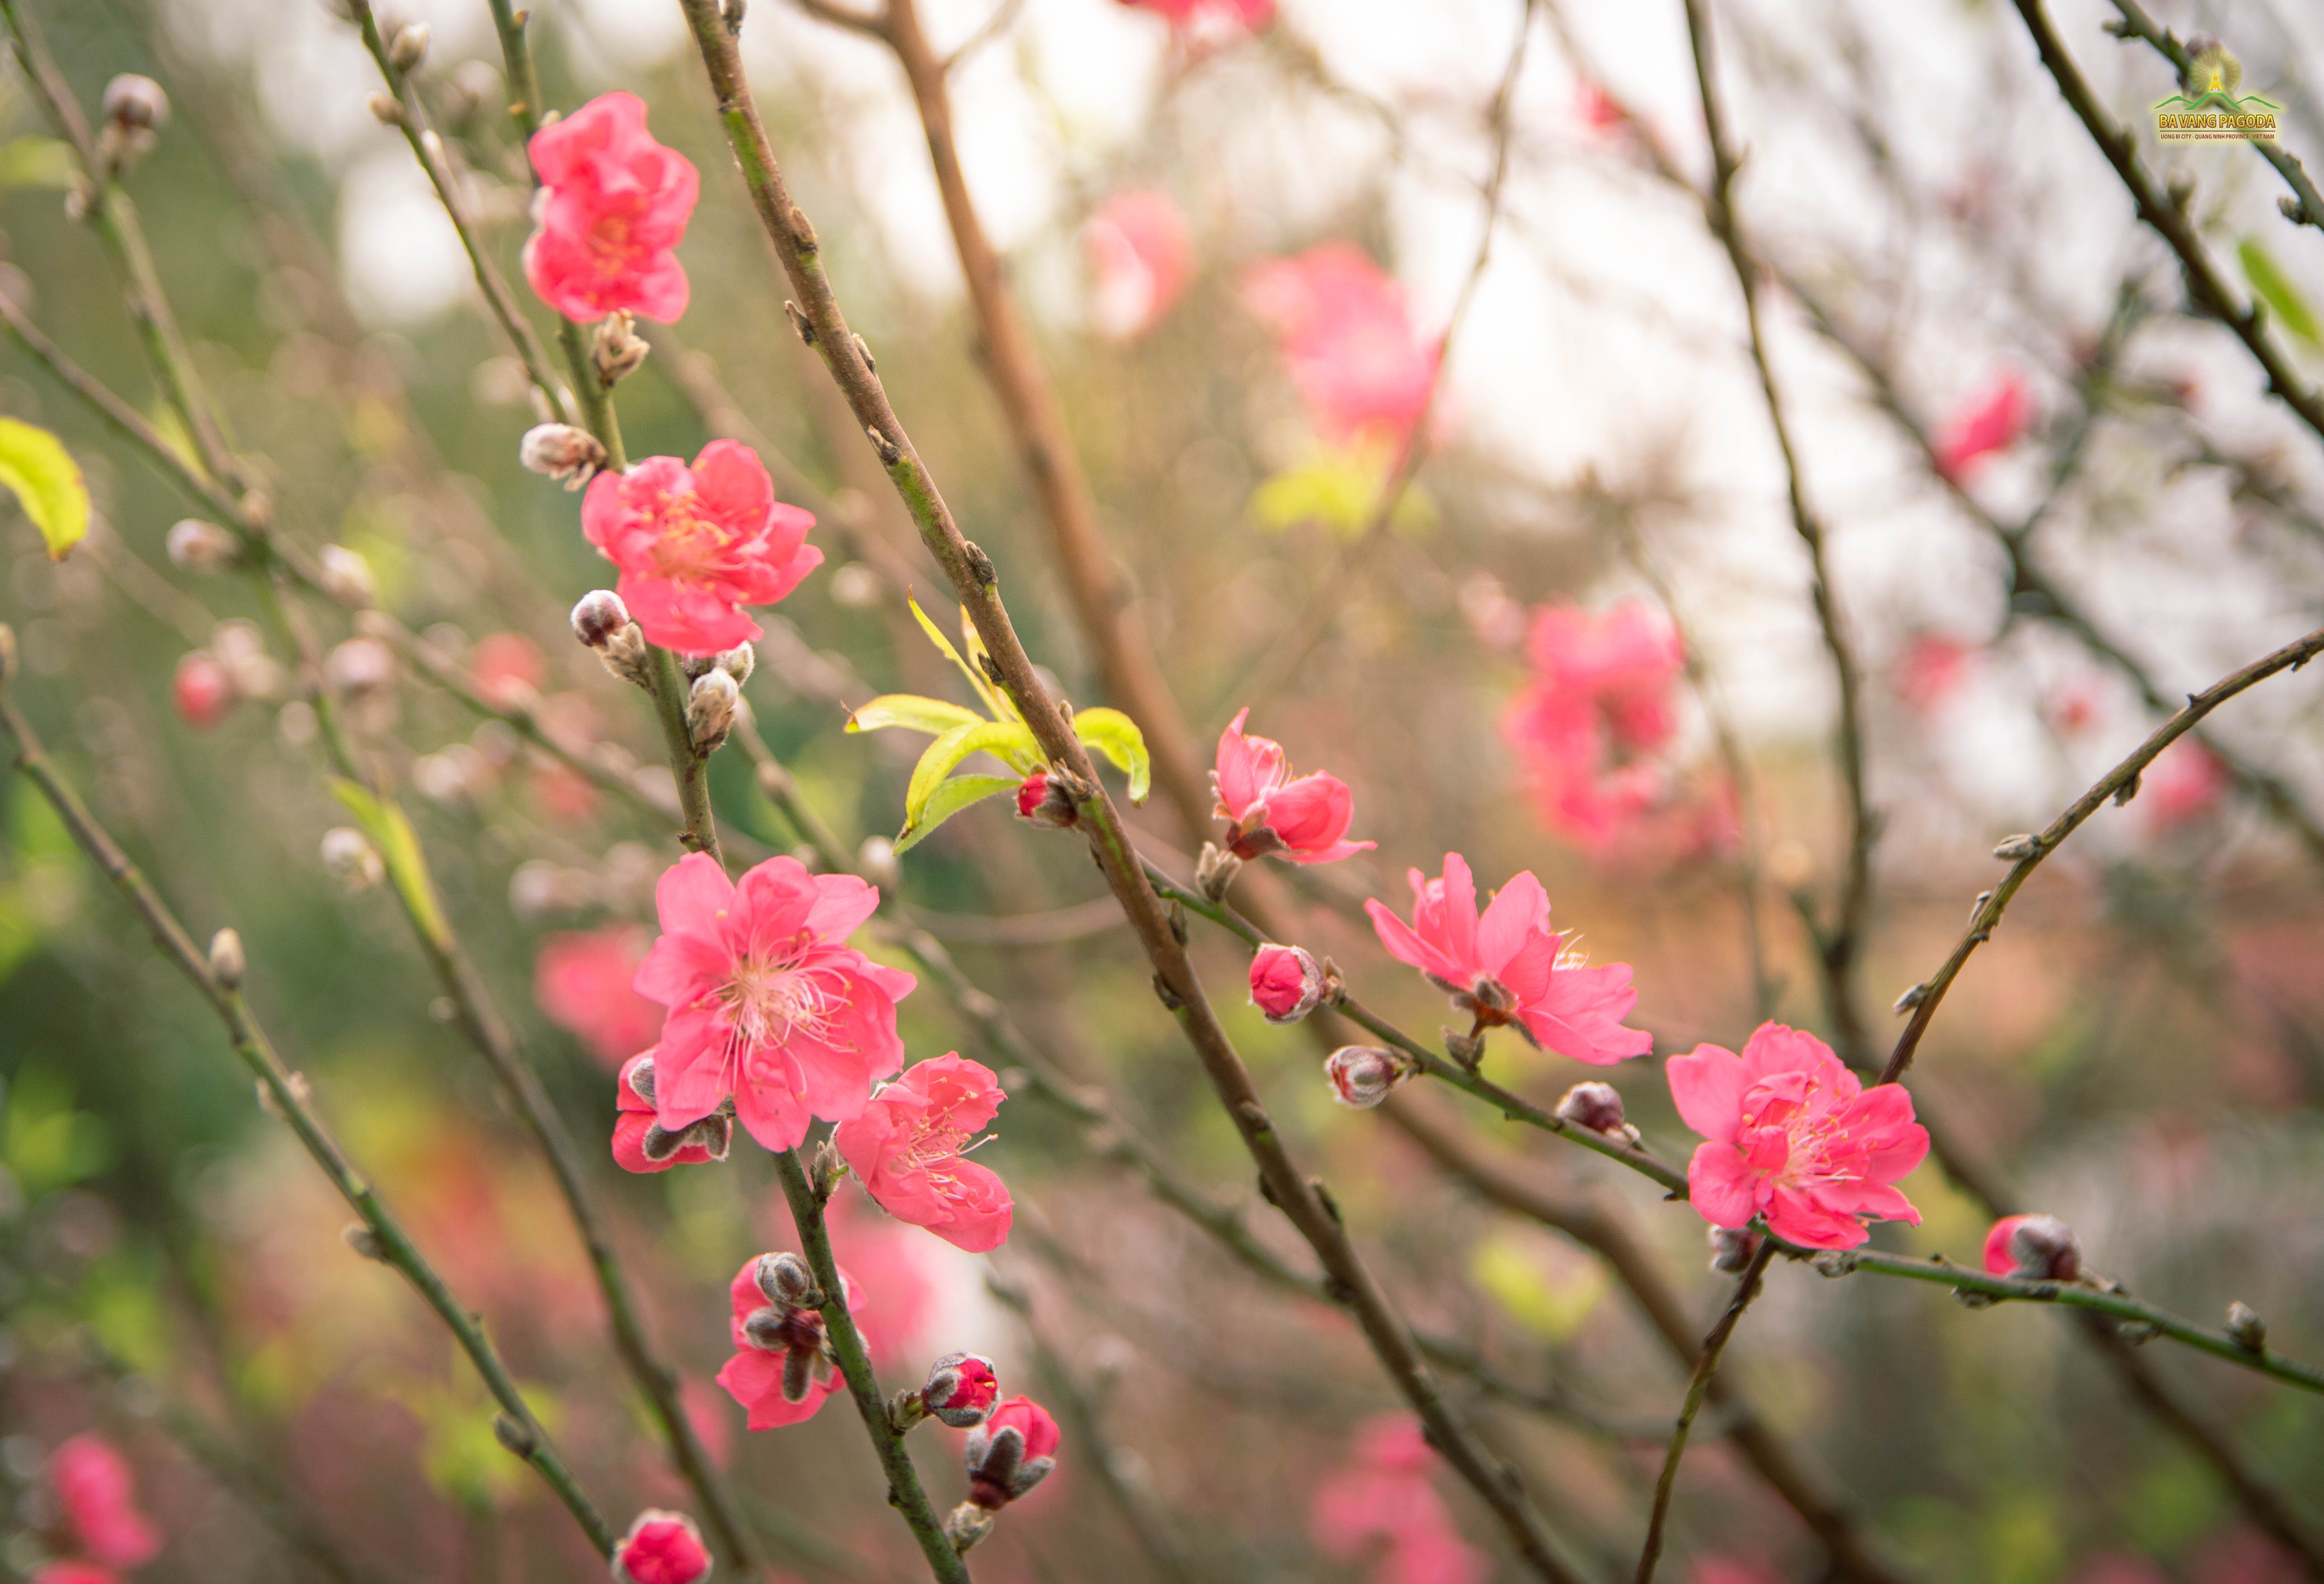 Embrace the blooming beauty at Ba Vang Pagoda